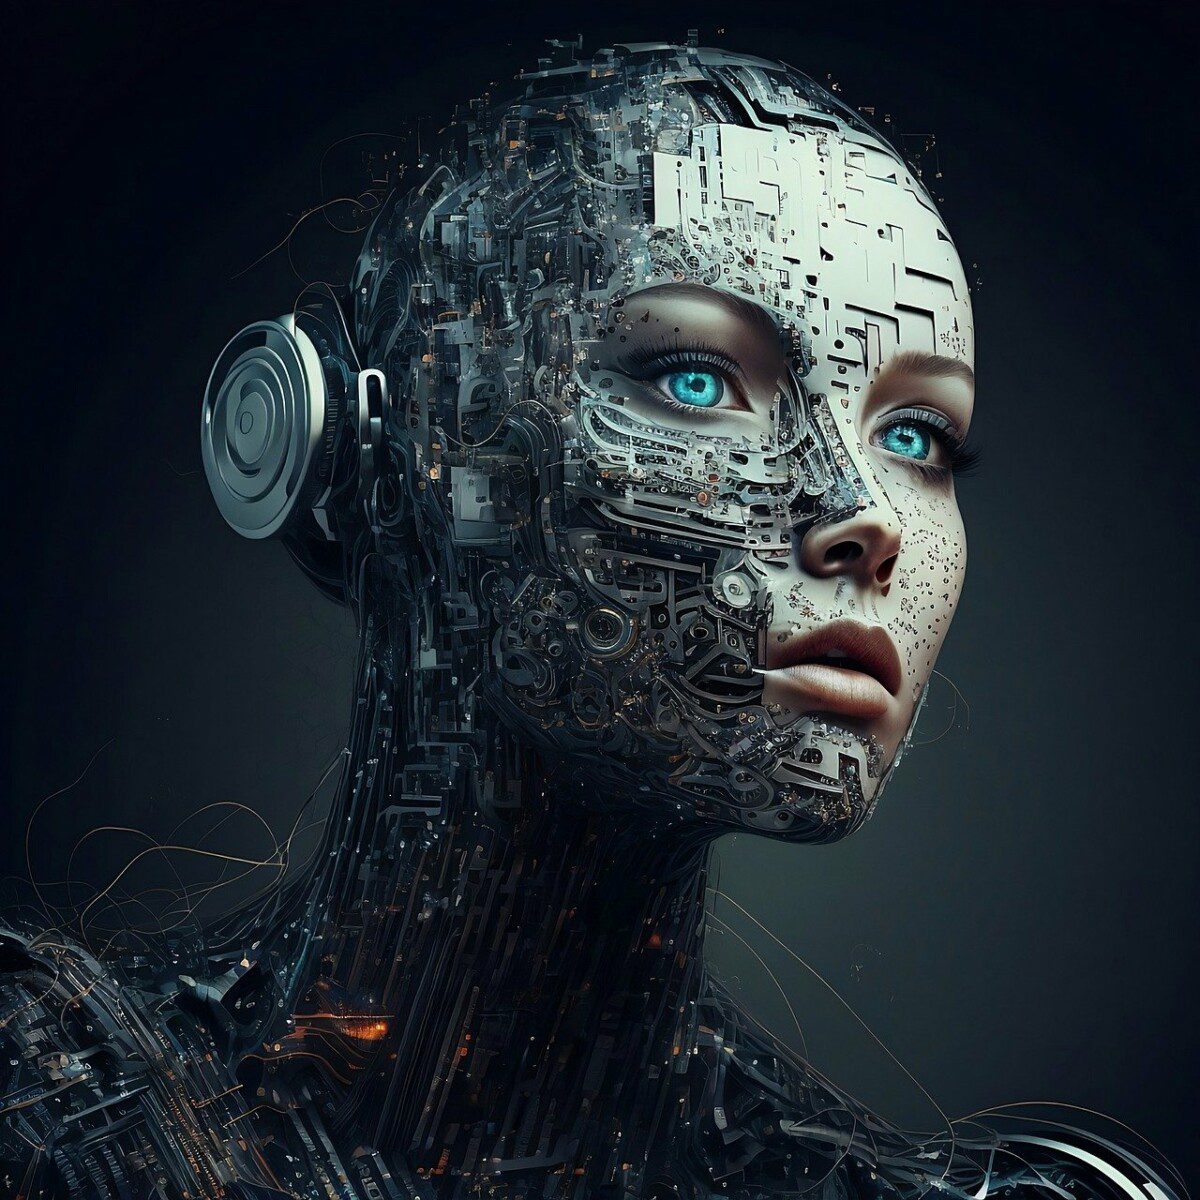 Legt die EU der KI nun mit dem EU AI Act die Zügel an? Die Illustration zeigt einen Cyborg. Der Cyborg sieht dabei bedrohlich aus und ist der Frontalansicht vor einem Hintergrund zu sehen. Man sieht nur den Kopf des Roboters.